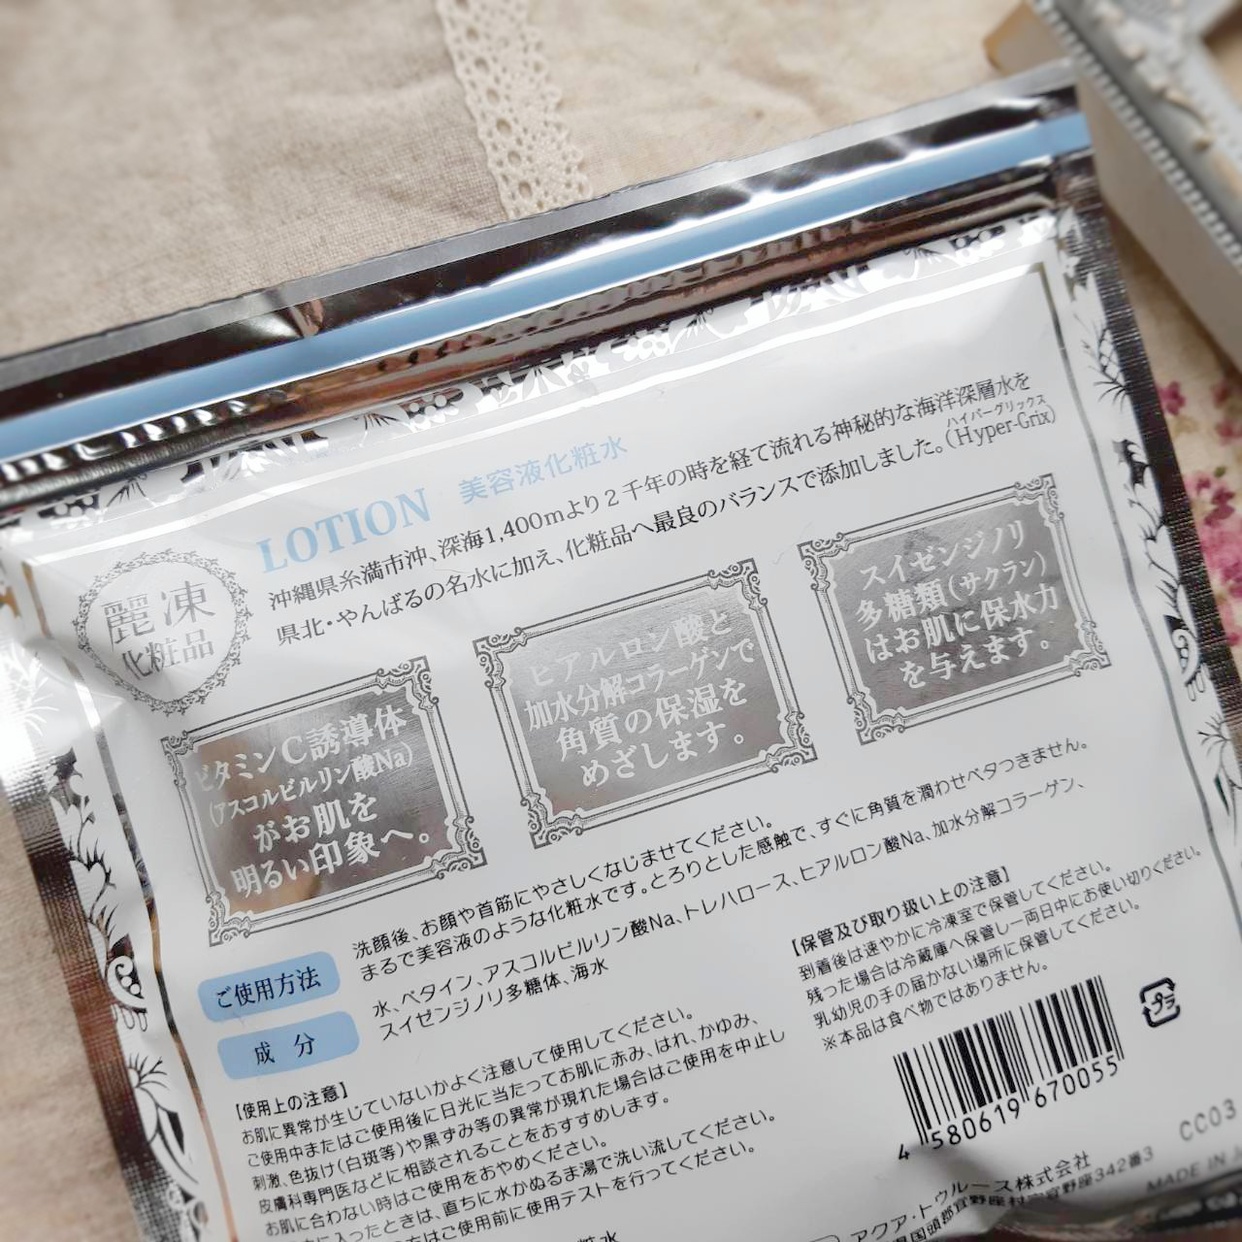 麗凍化粧品(Reitou Cosme) 美容液 化粧水を使ったぎんむぎさんのクチコミ画像4